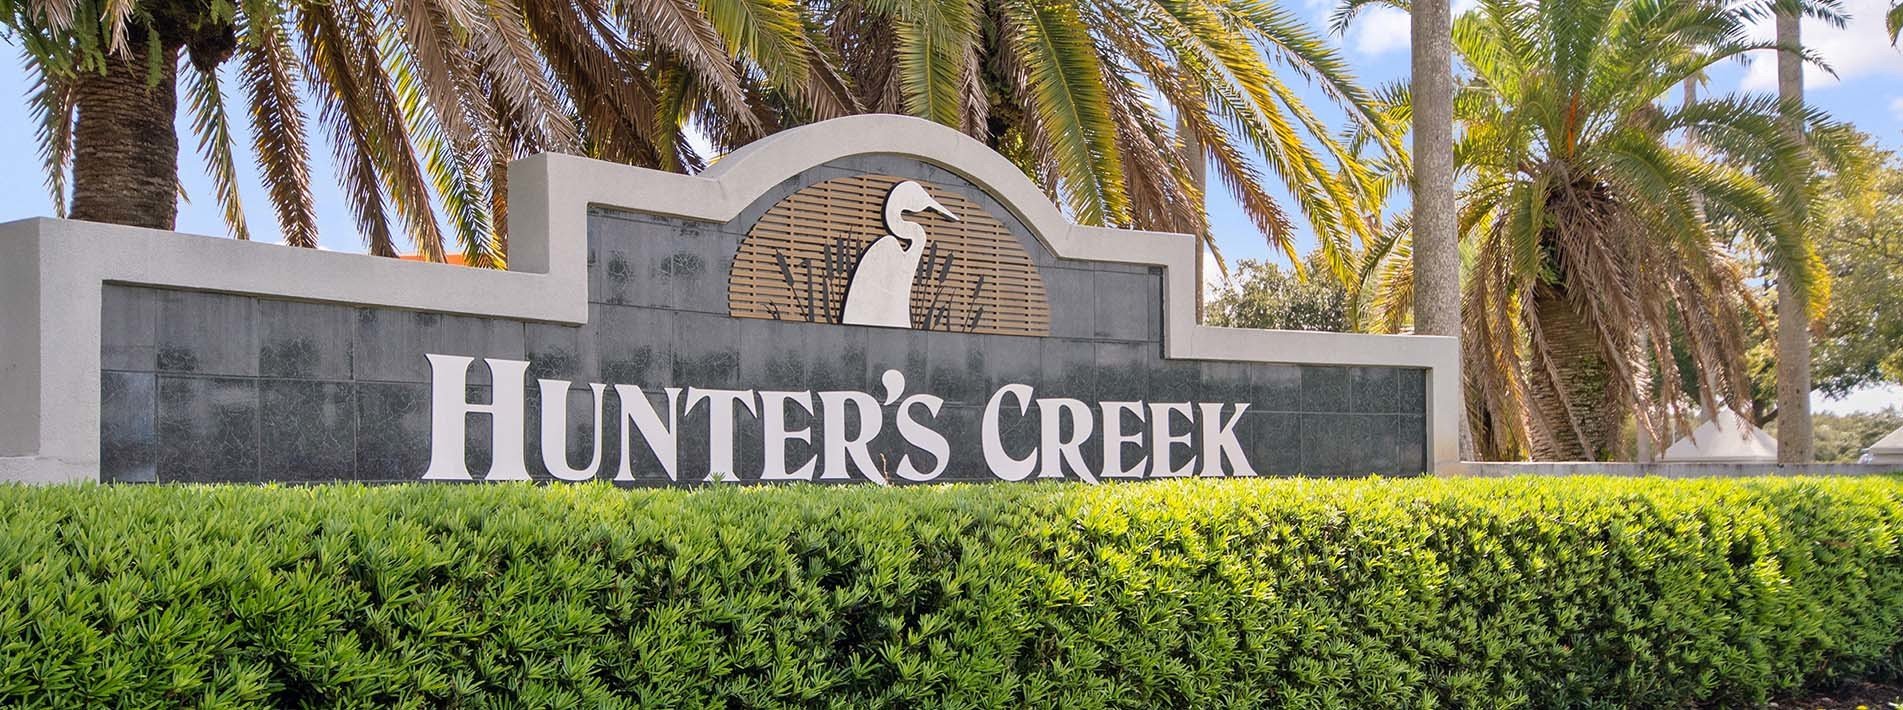 Hunters Creek Real Estate